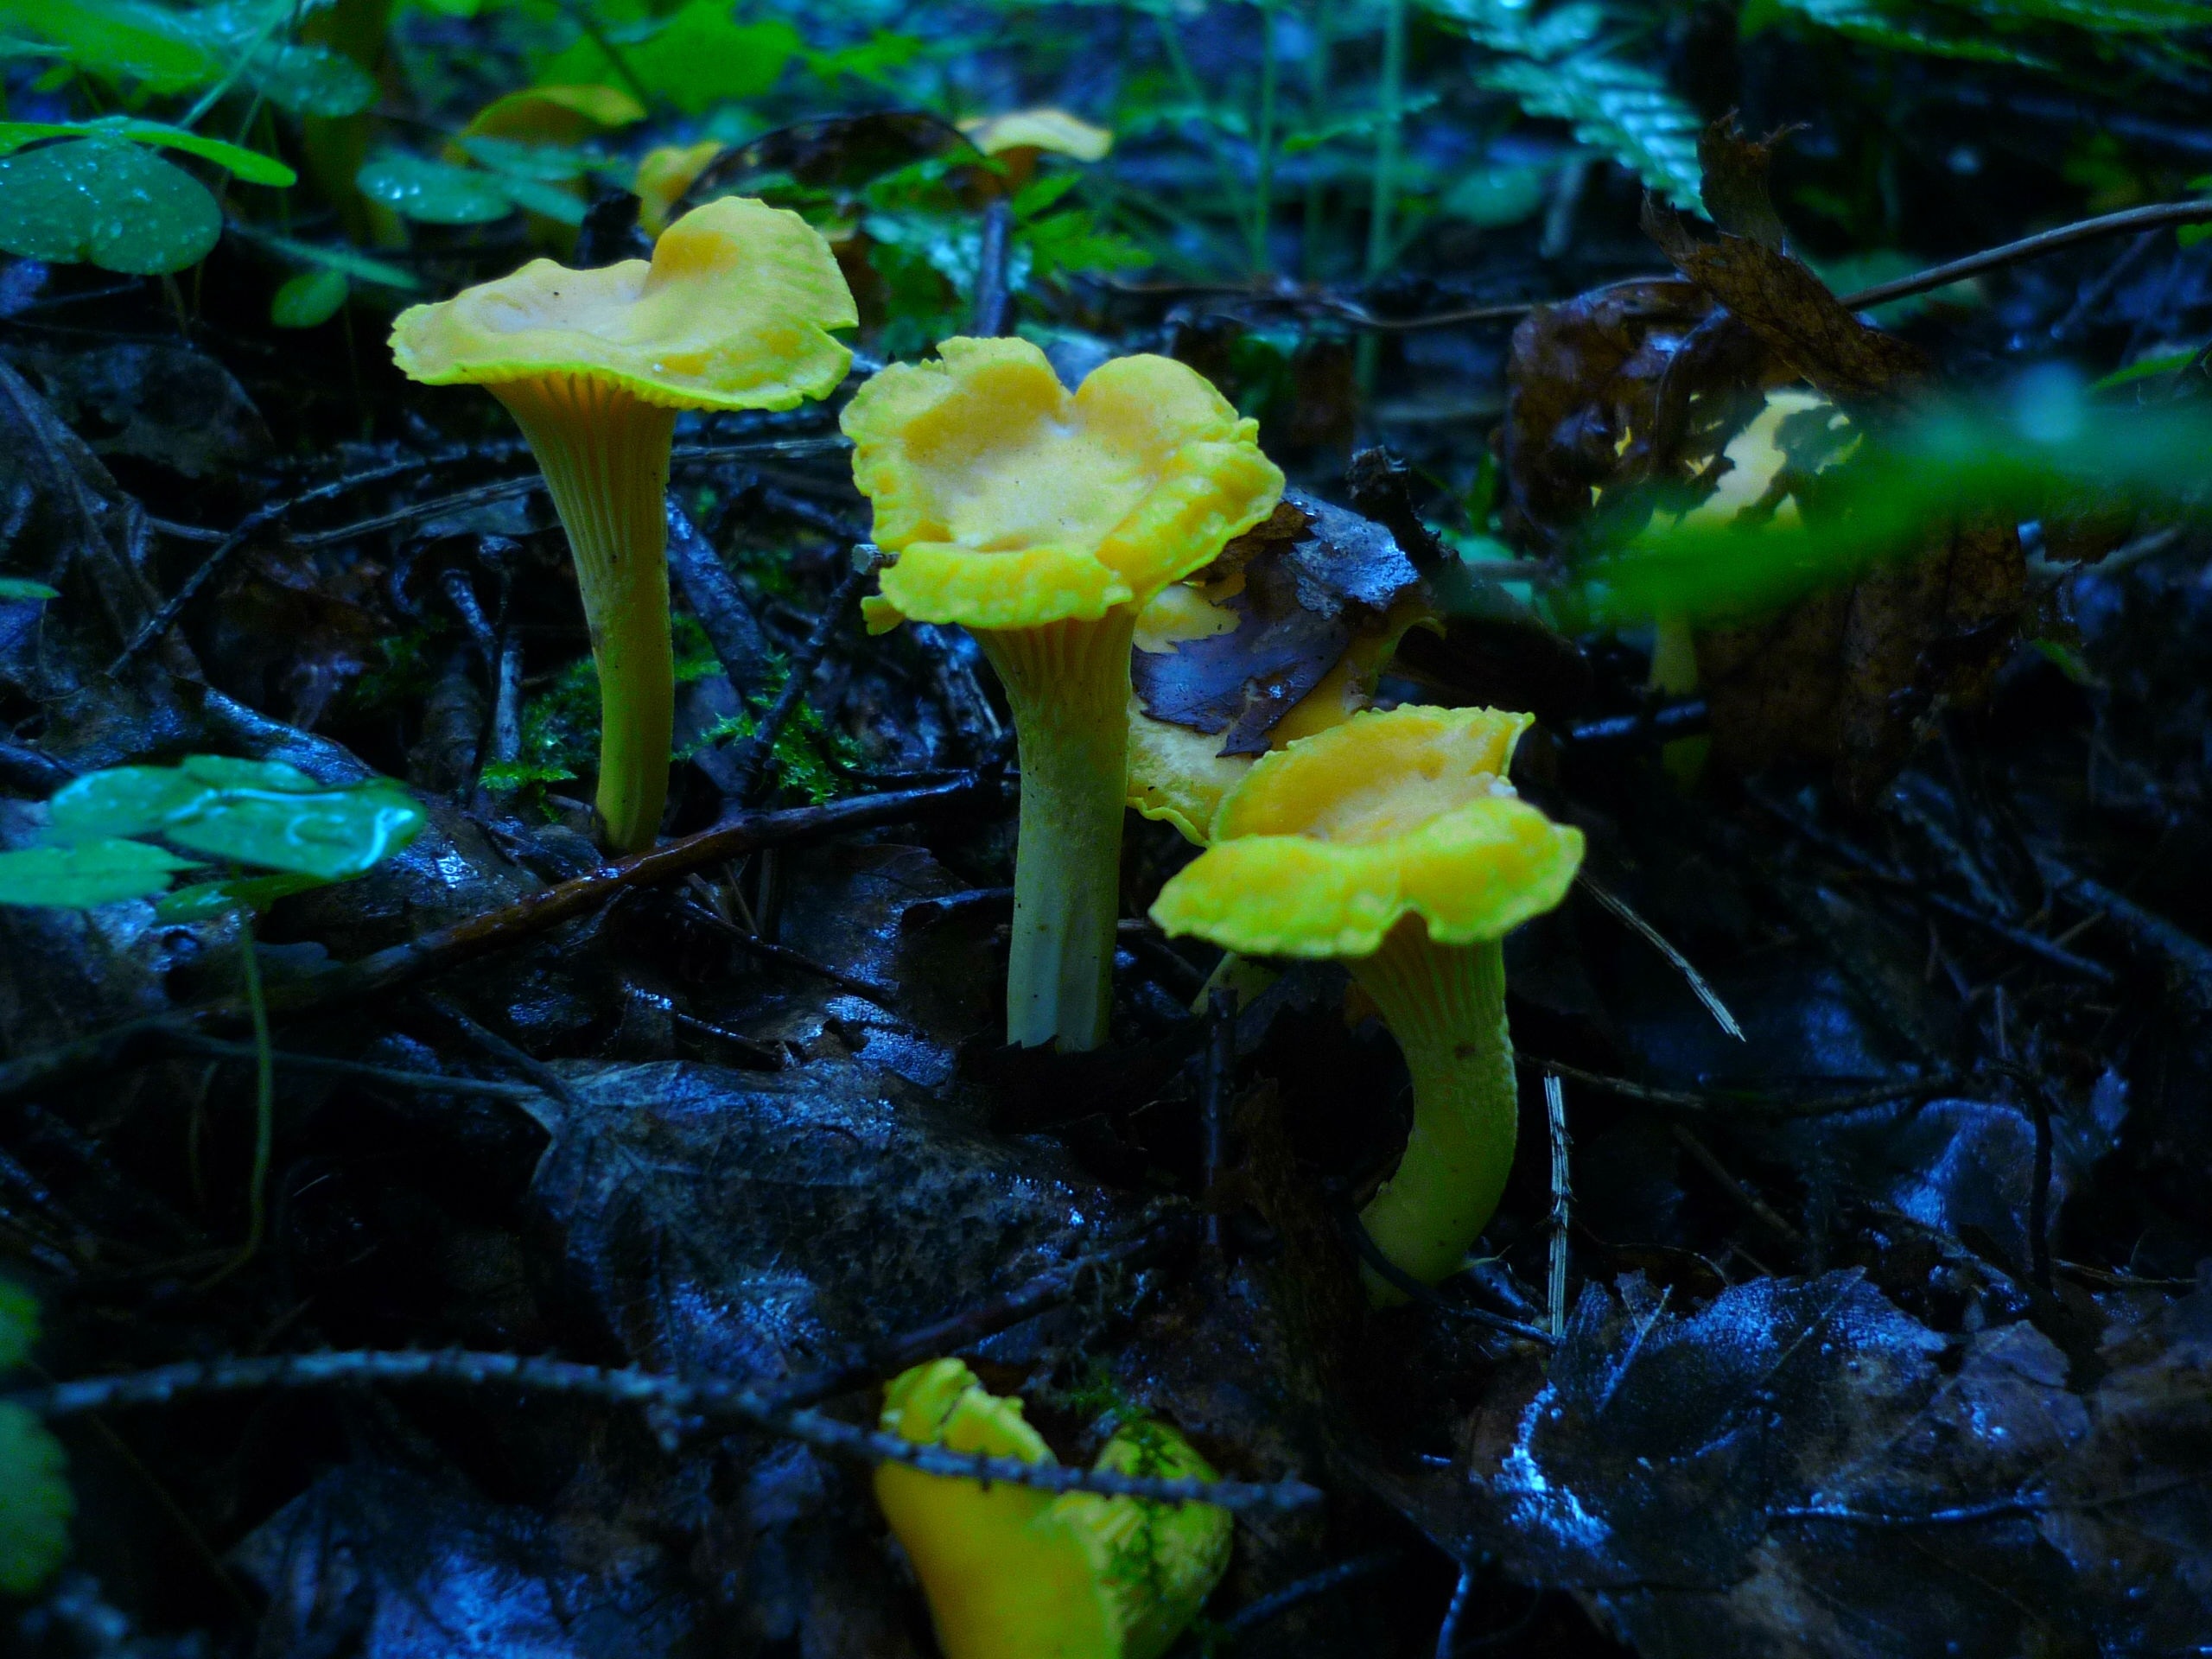 three yellow mushrooms